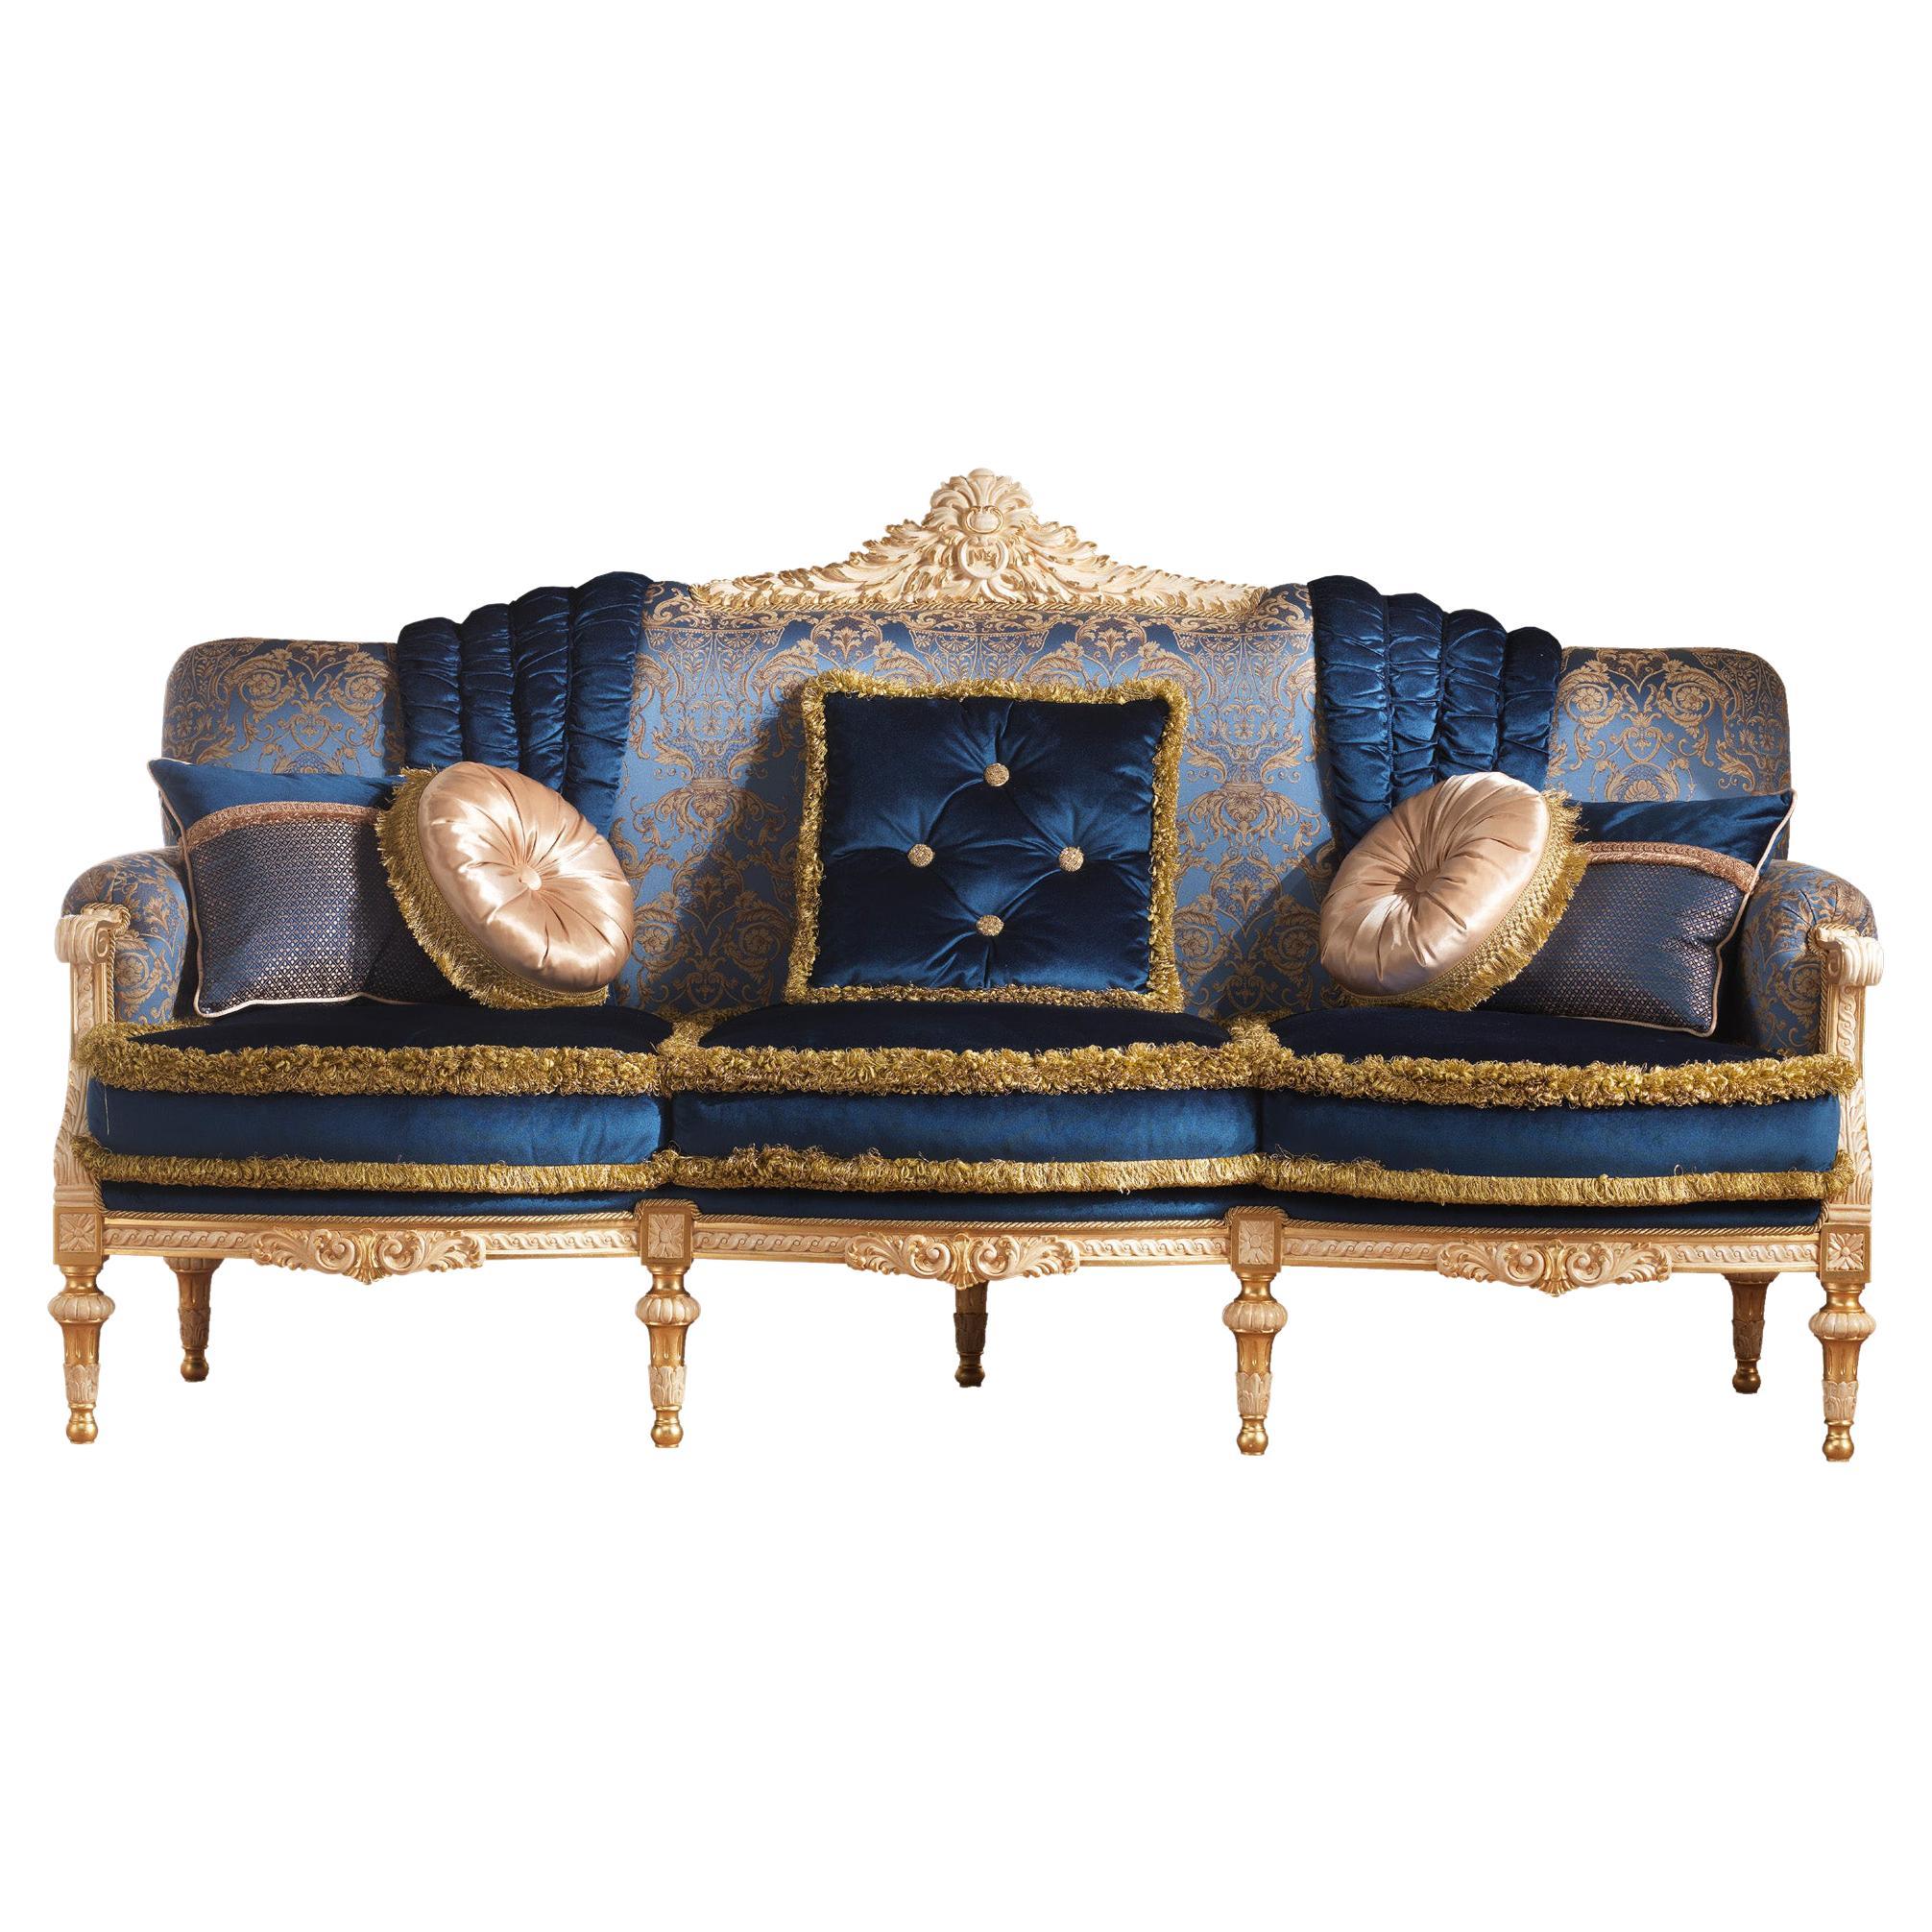 Elegantes venezianisches Sofa aus massivem Holz und elfenbeinfarben lackiert mit Blattgolddetails